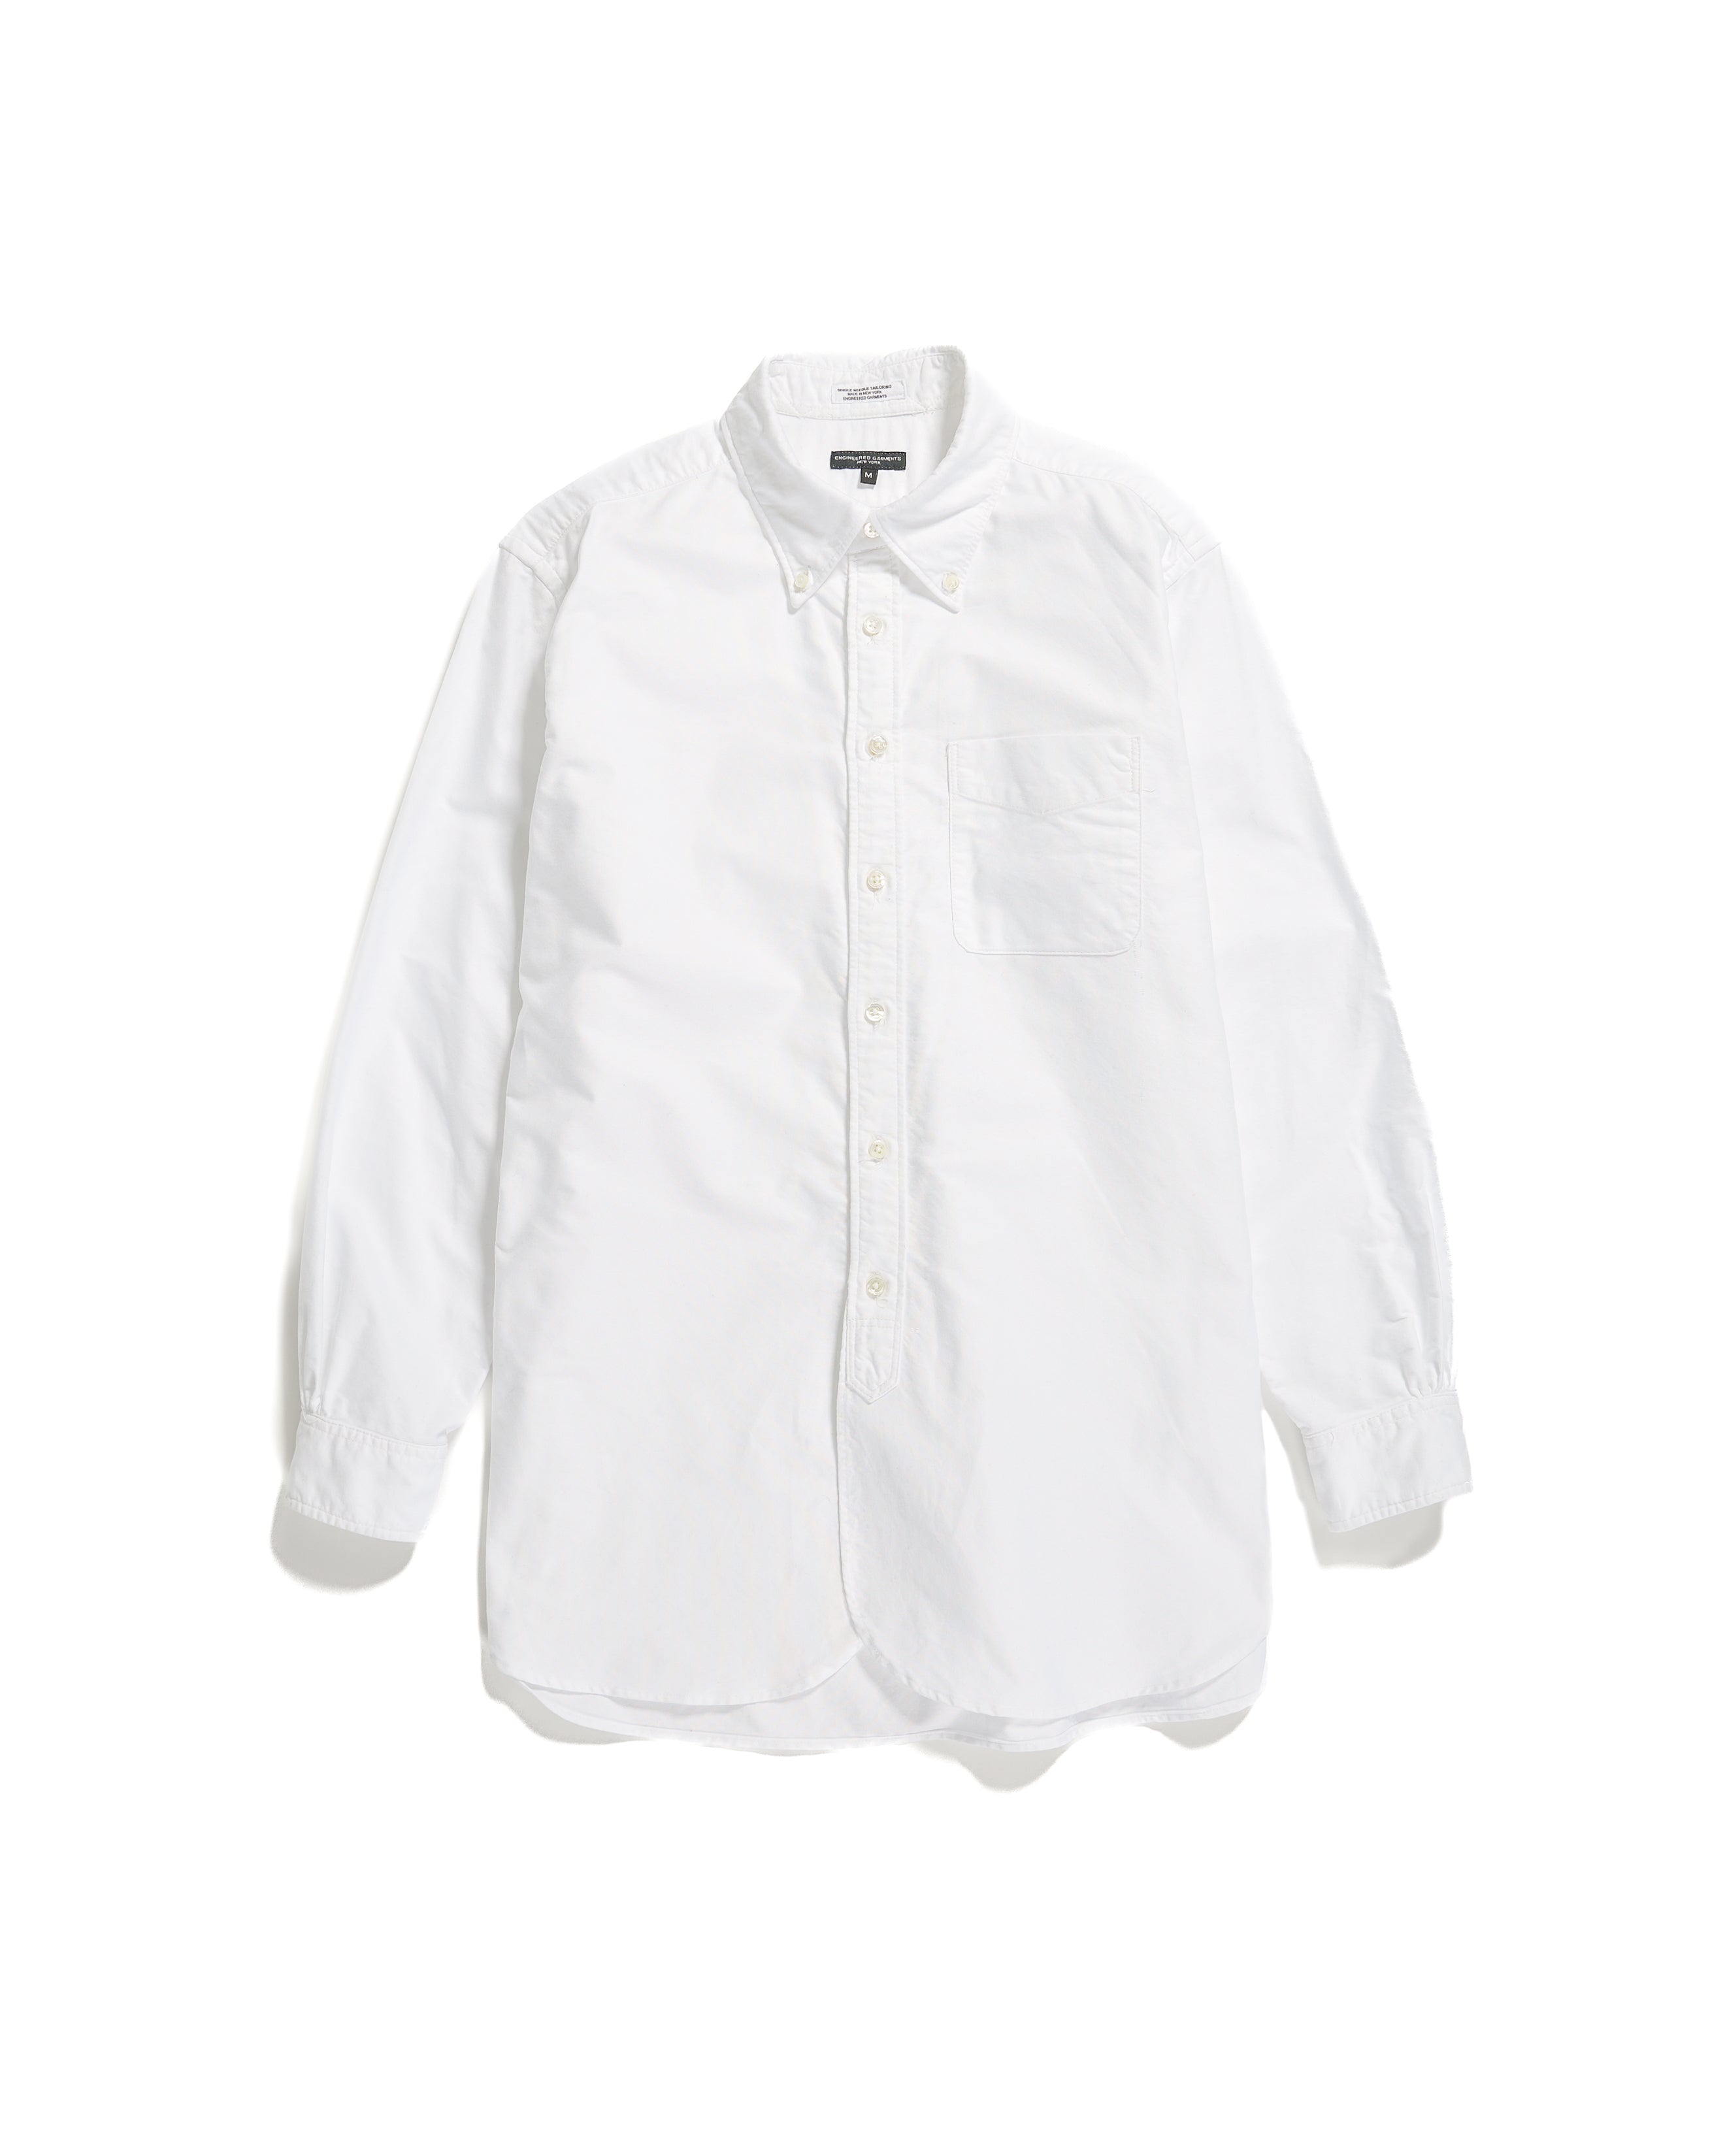 19 Century BD Shirt - White Cotton Oxford